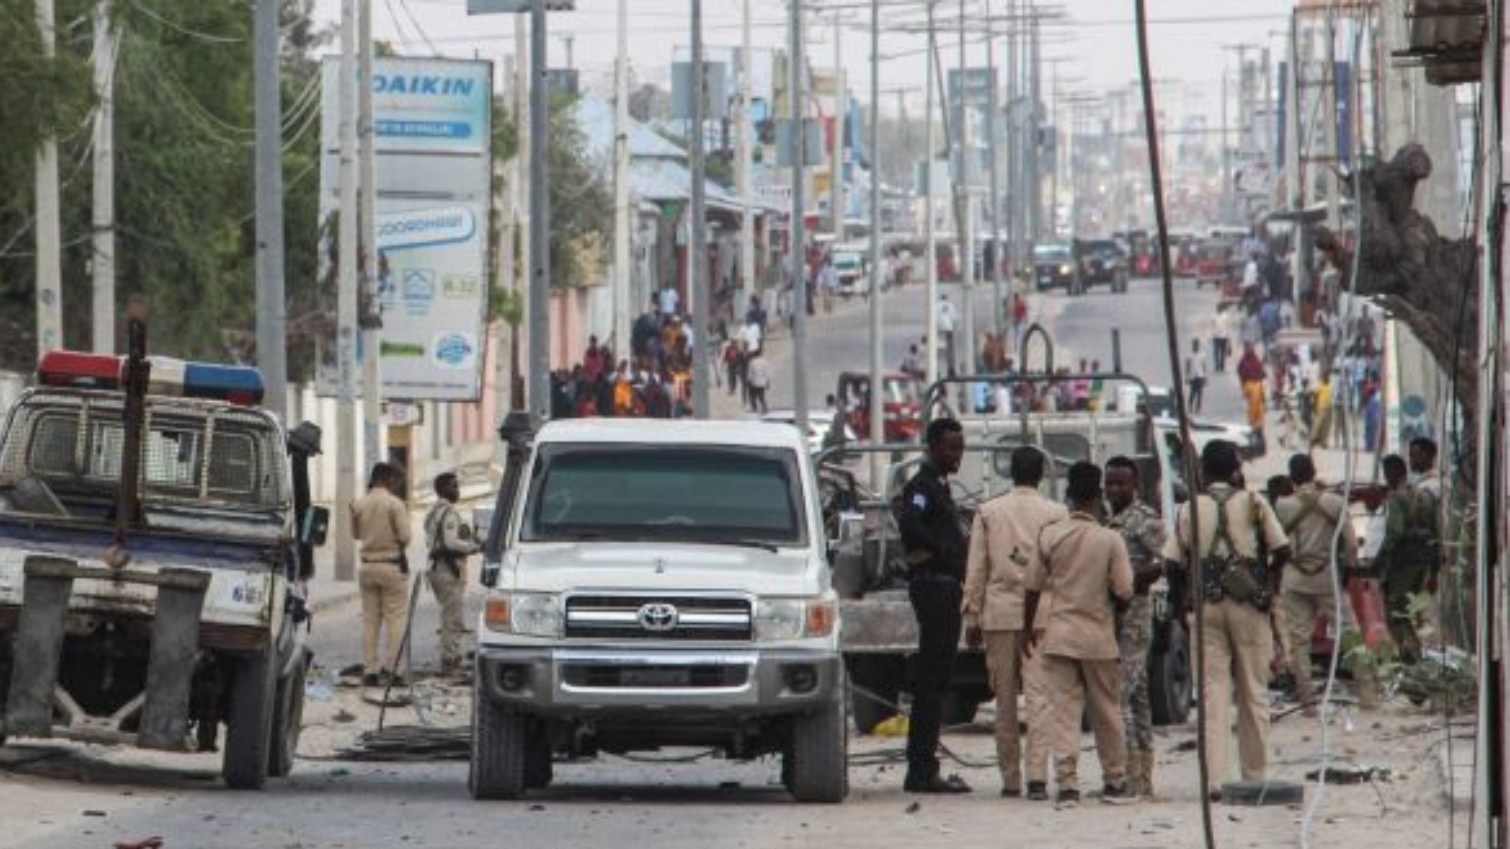 ضباط وأفراد من الشرطة يقفون في موقع انفجار القنبلة في مقديشو، الصومال. في 25 تشرين الثاني/نوفمبر 2021.